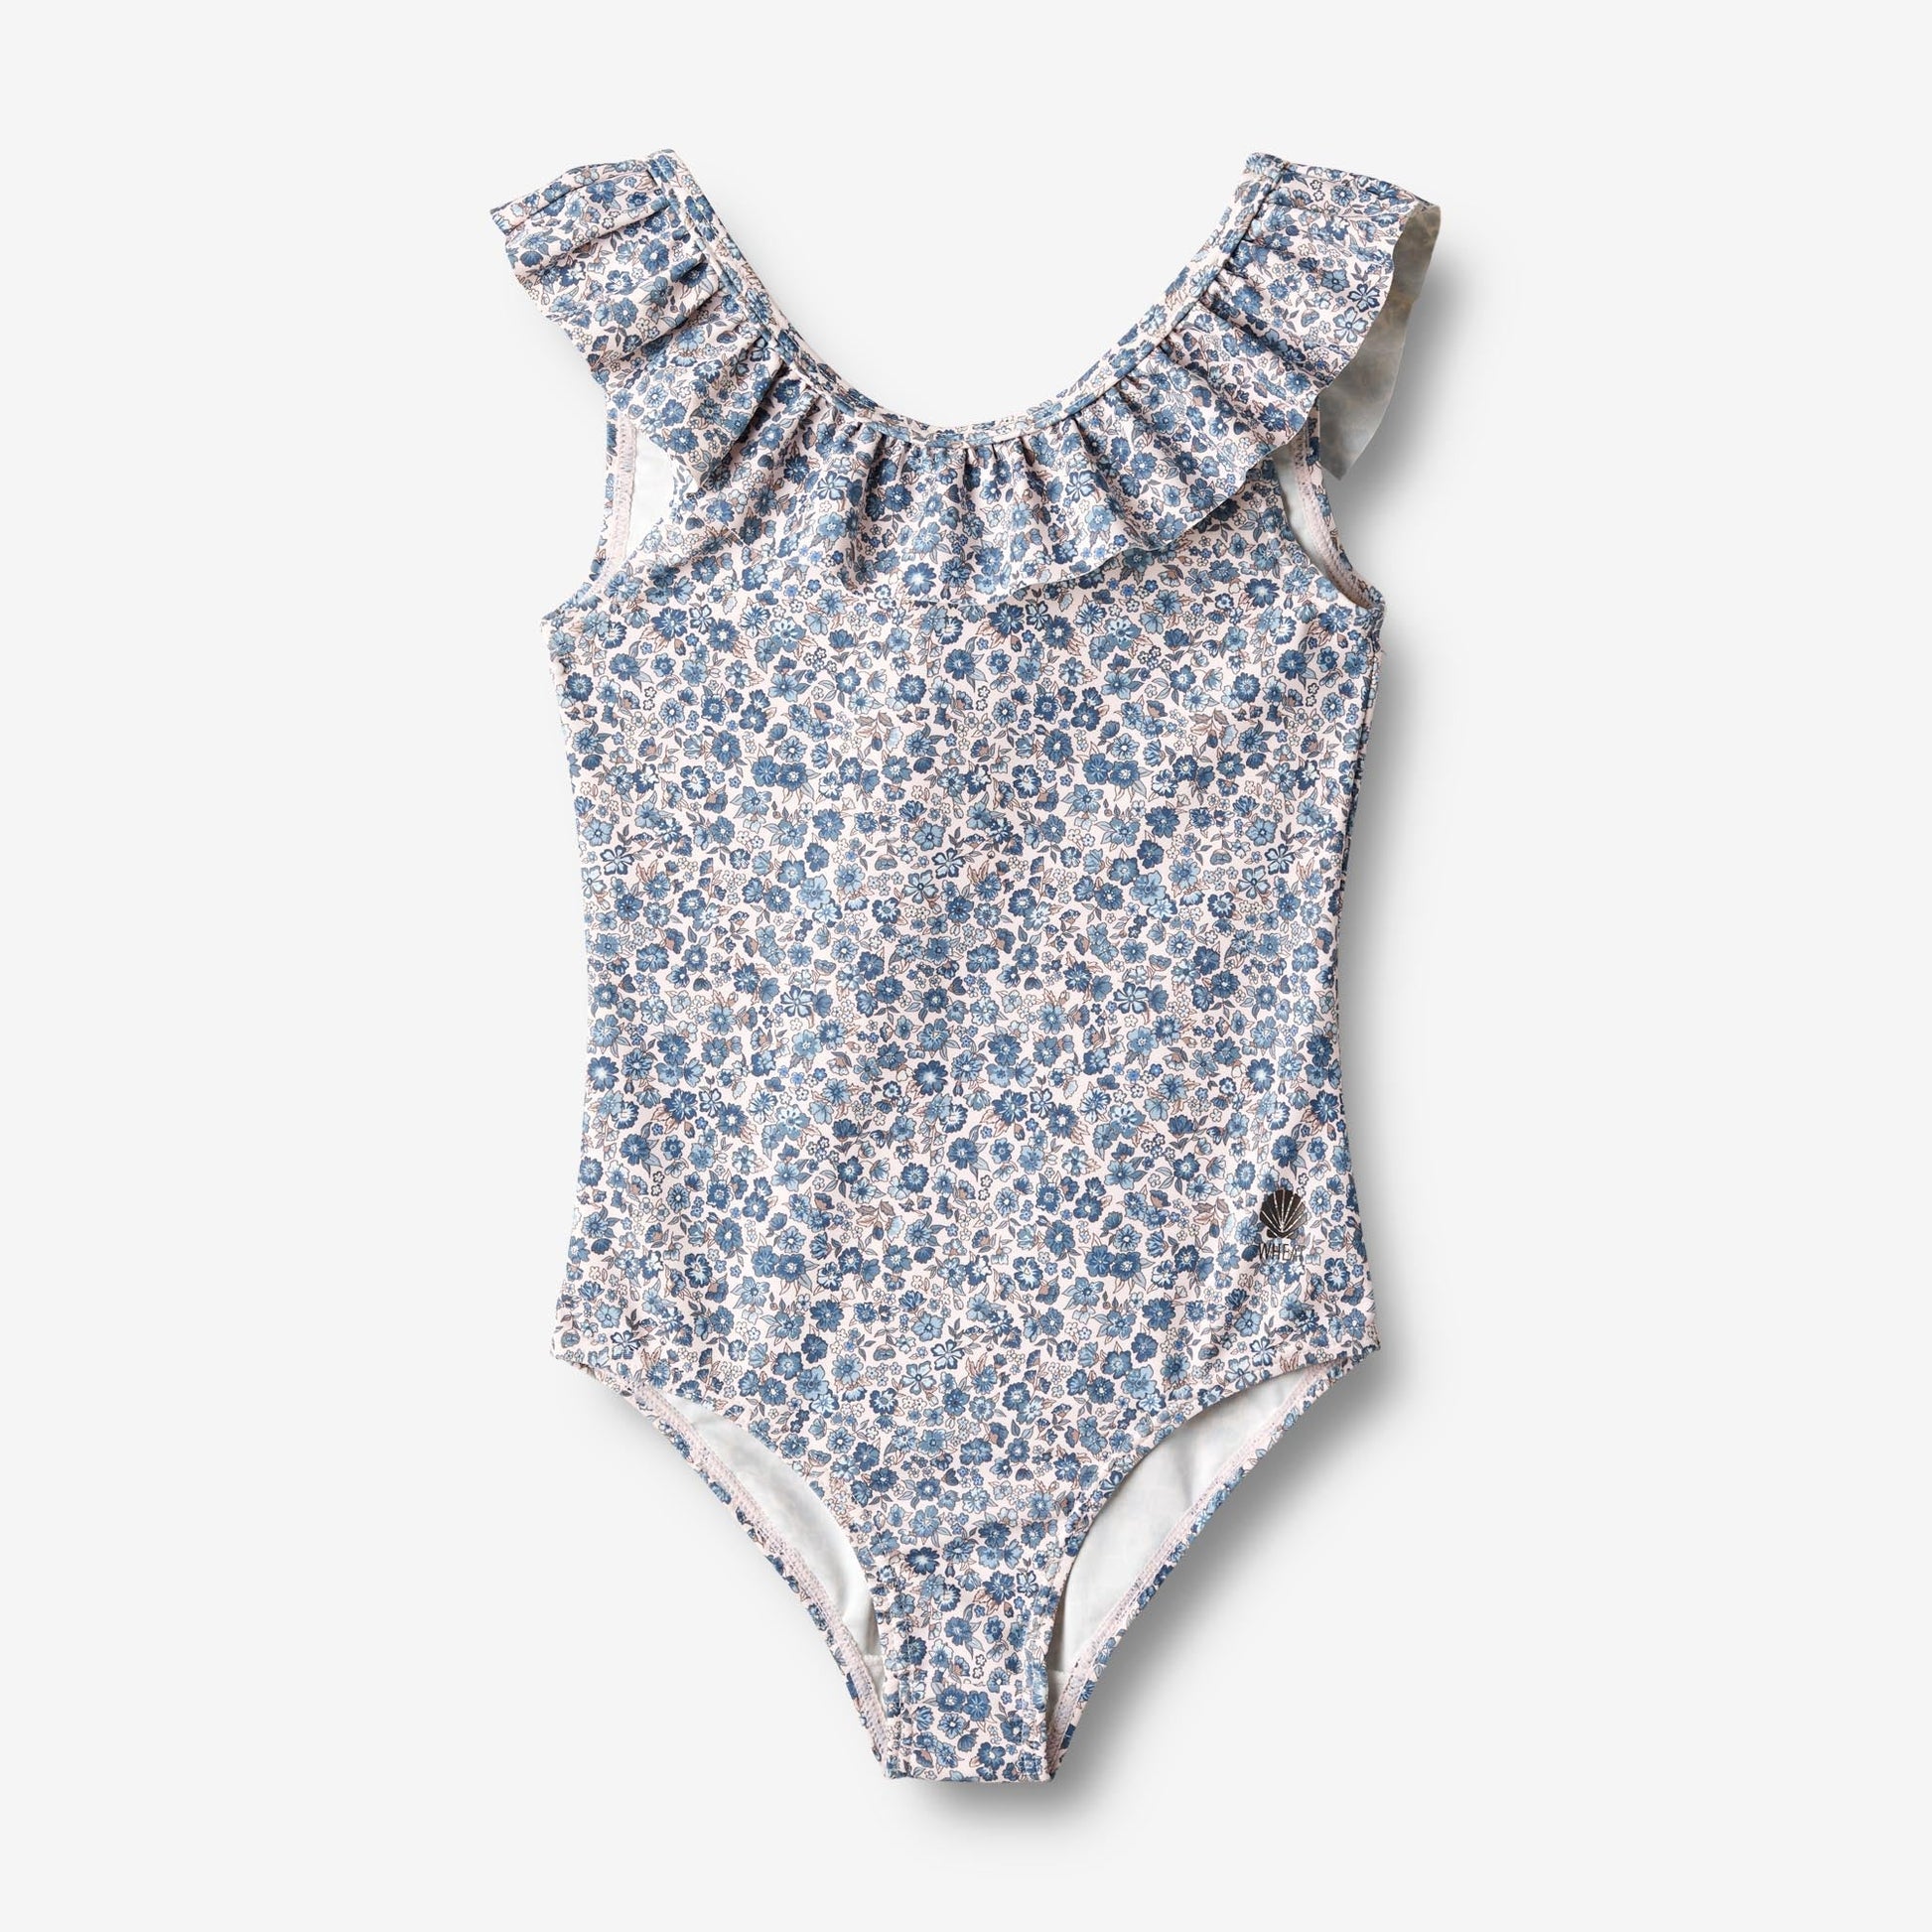 Wheat 'Marie-Louise' Children's Swimsuit - Blue Flower Meadow